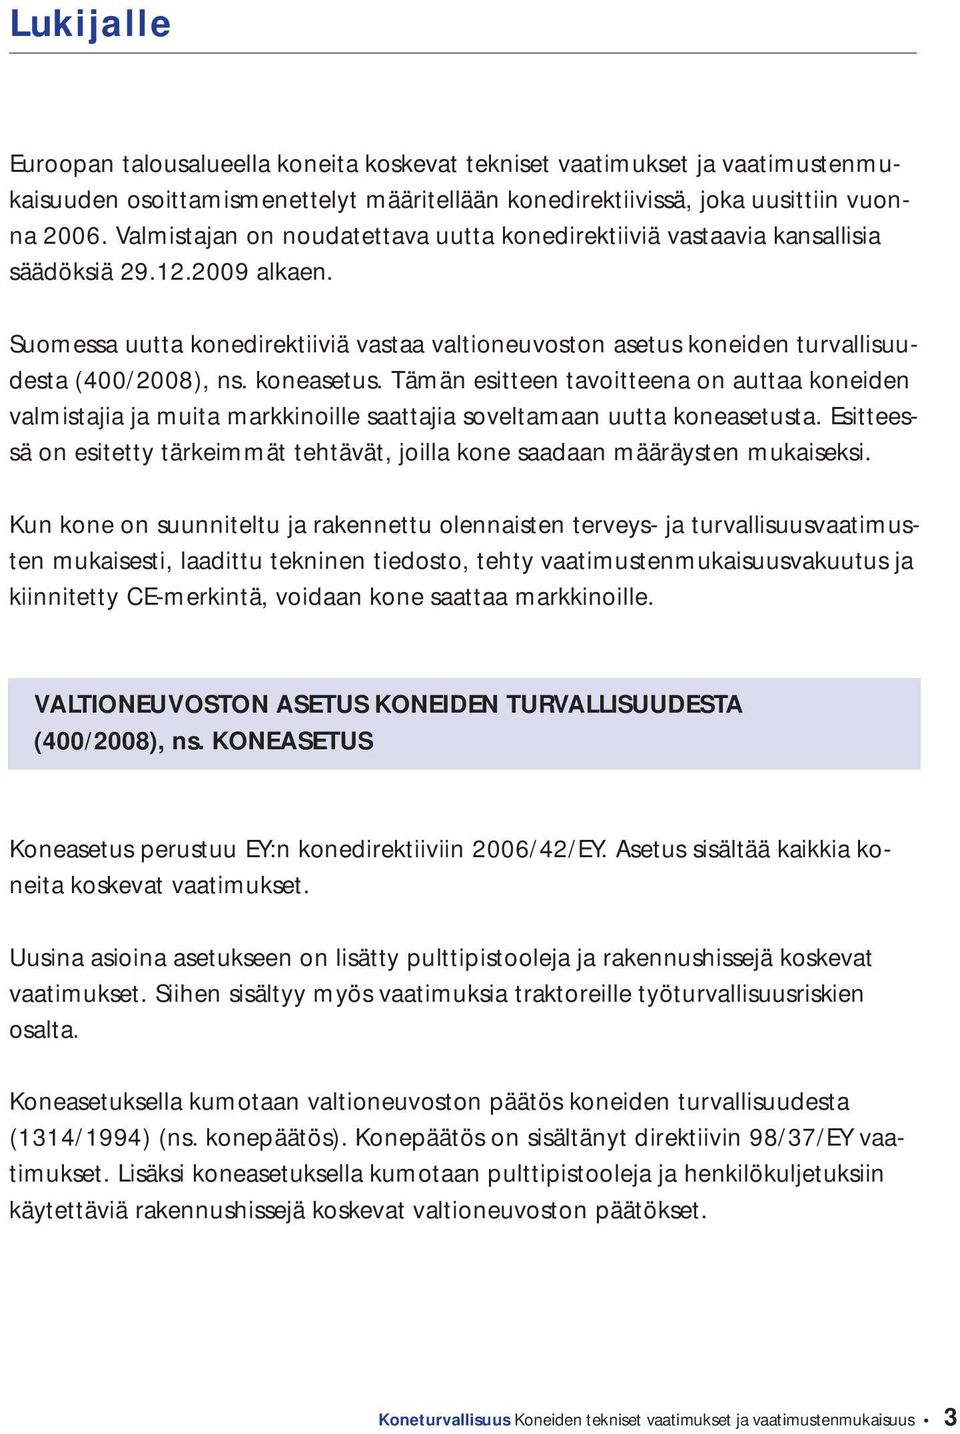 Suomessa uutta konedirektiiviä vastaa valtioneuvoston asetus koneiden turvallisuudesta (400/2008), ns. koneasetus.